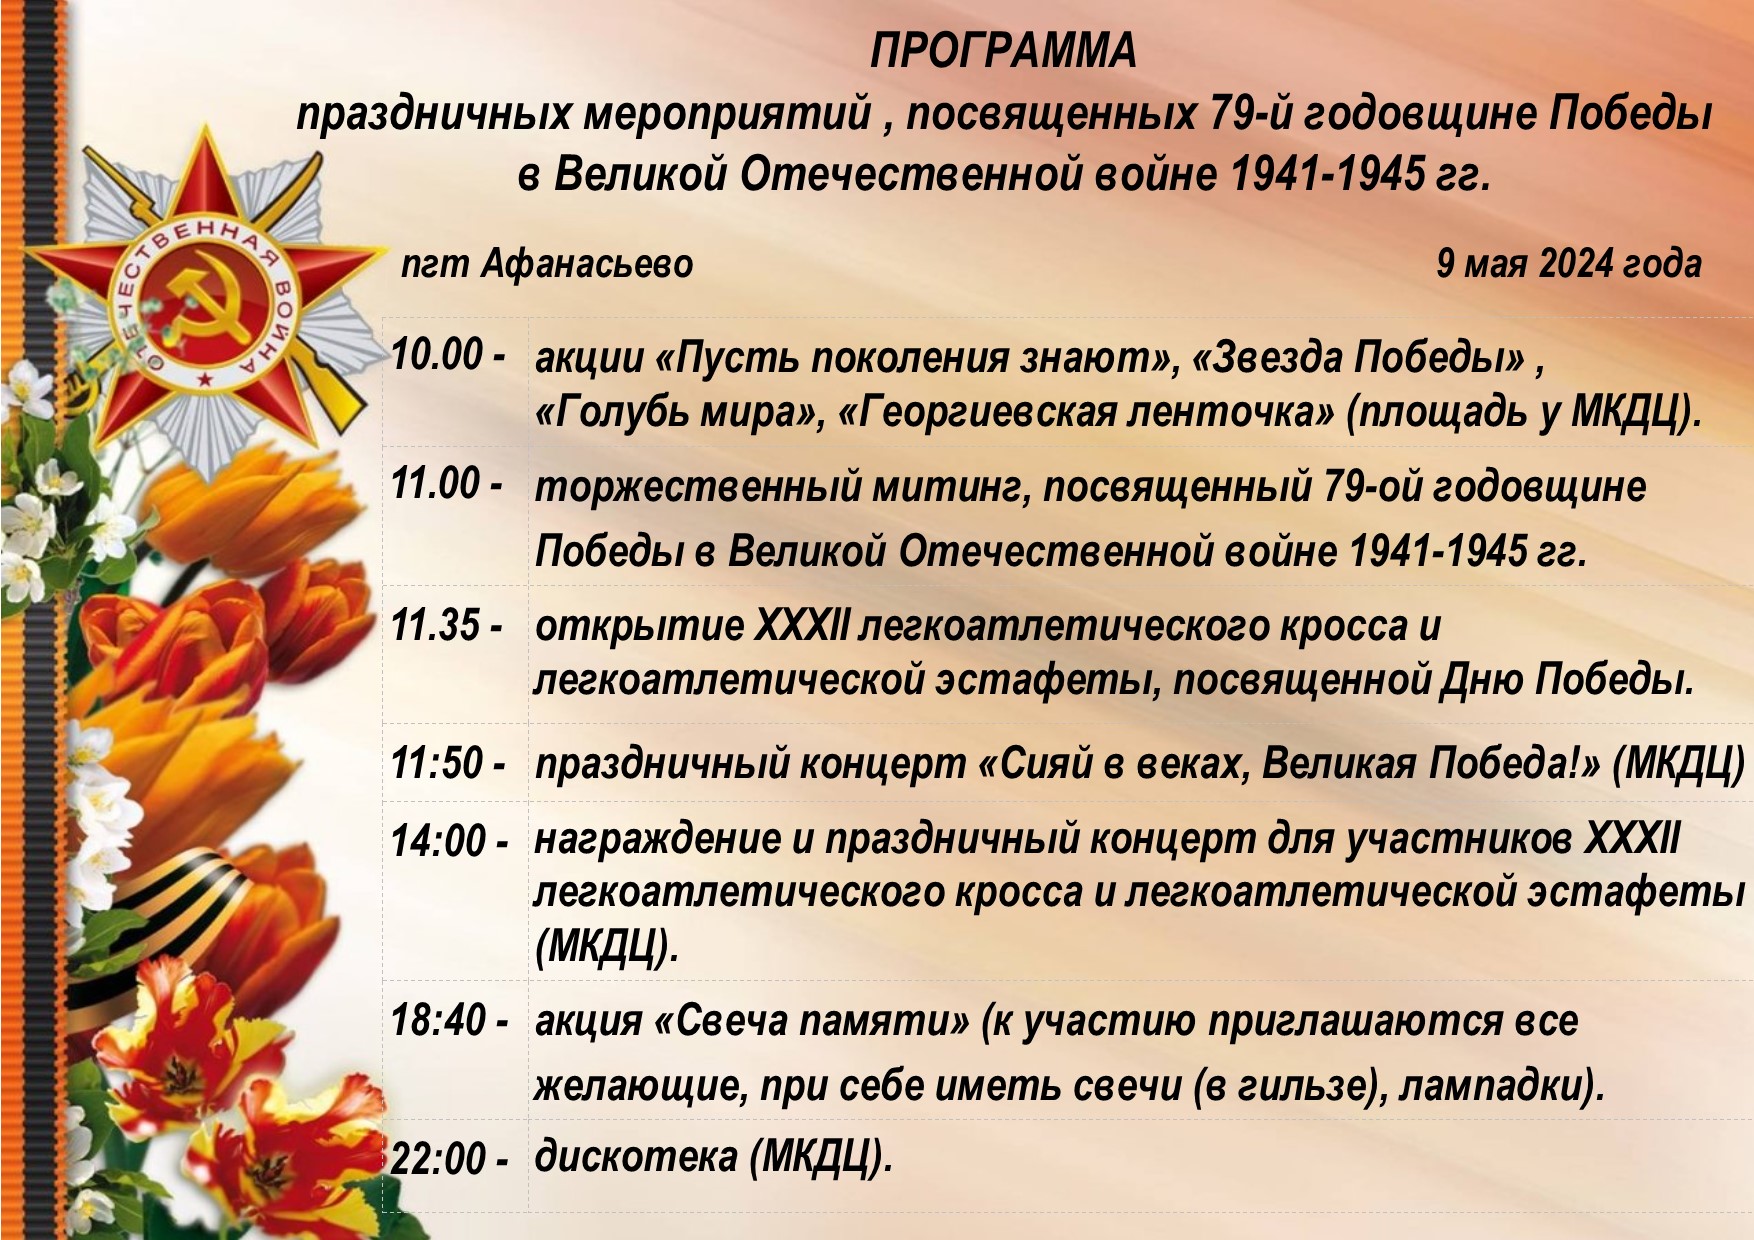 Программа мероприятий, посвященных 79-й годовщине Победы в Великой Отечественной войне 1941-1945.